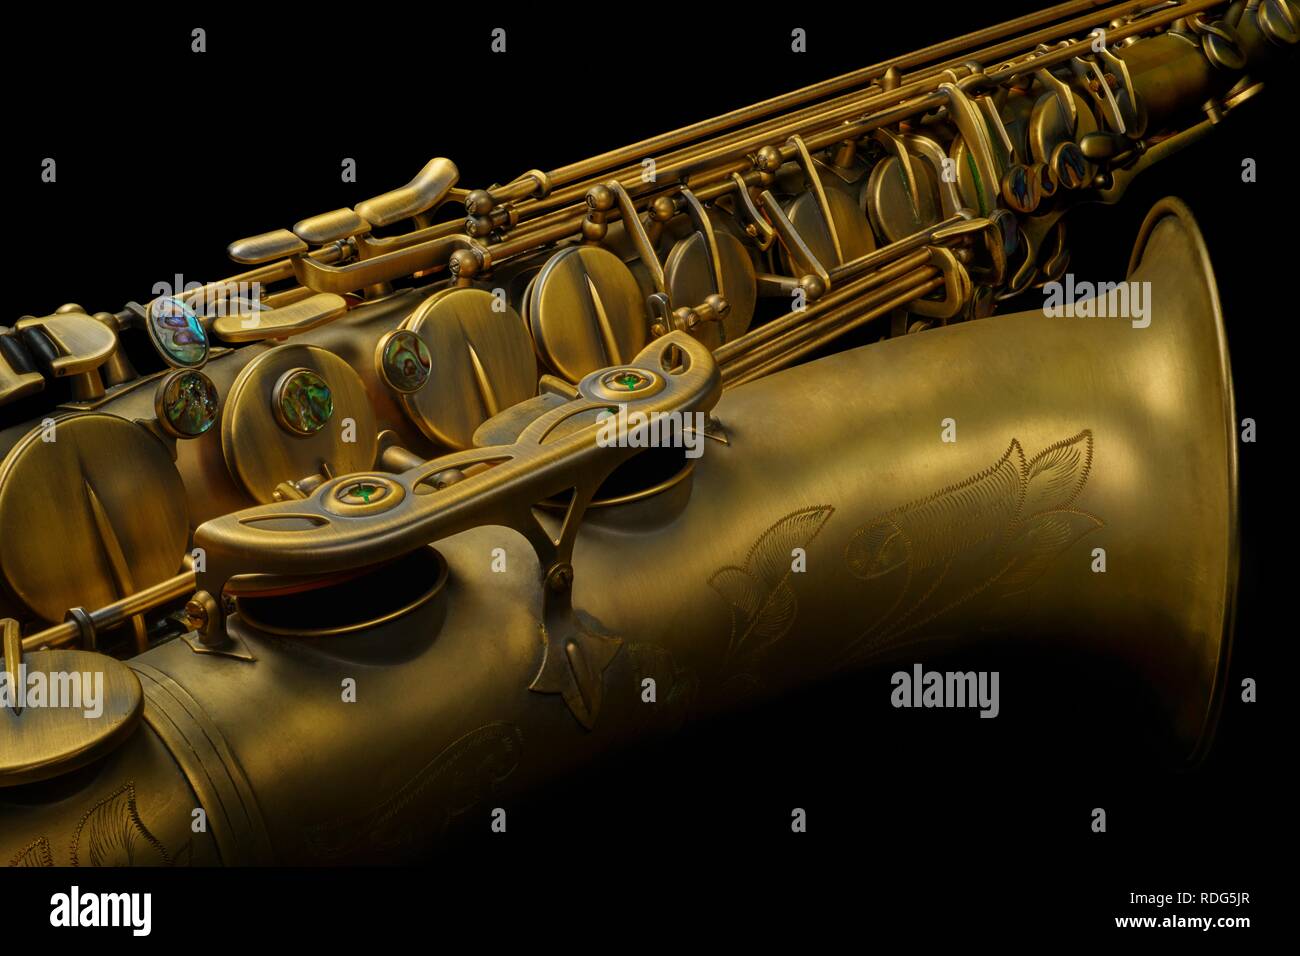 Saxophone ténor en bronze haute qualité close-up sur fond noir Banque D'Images